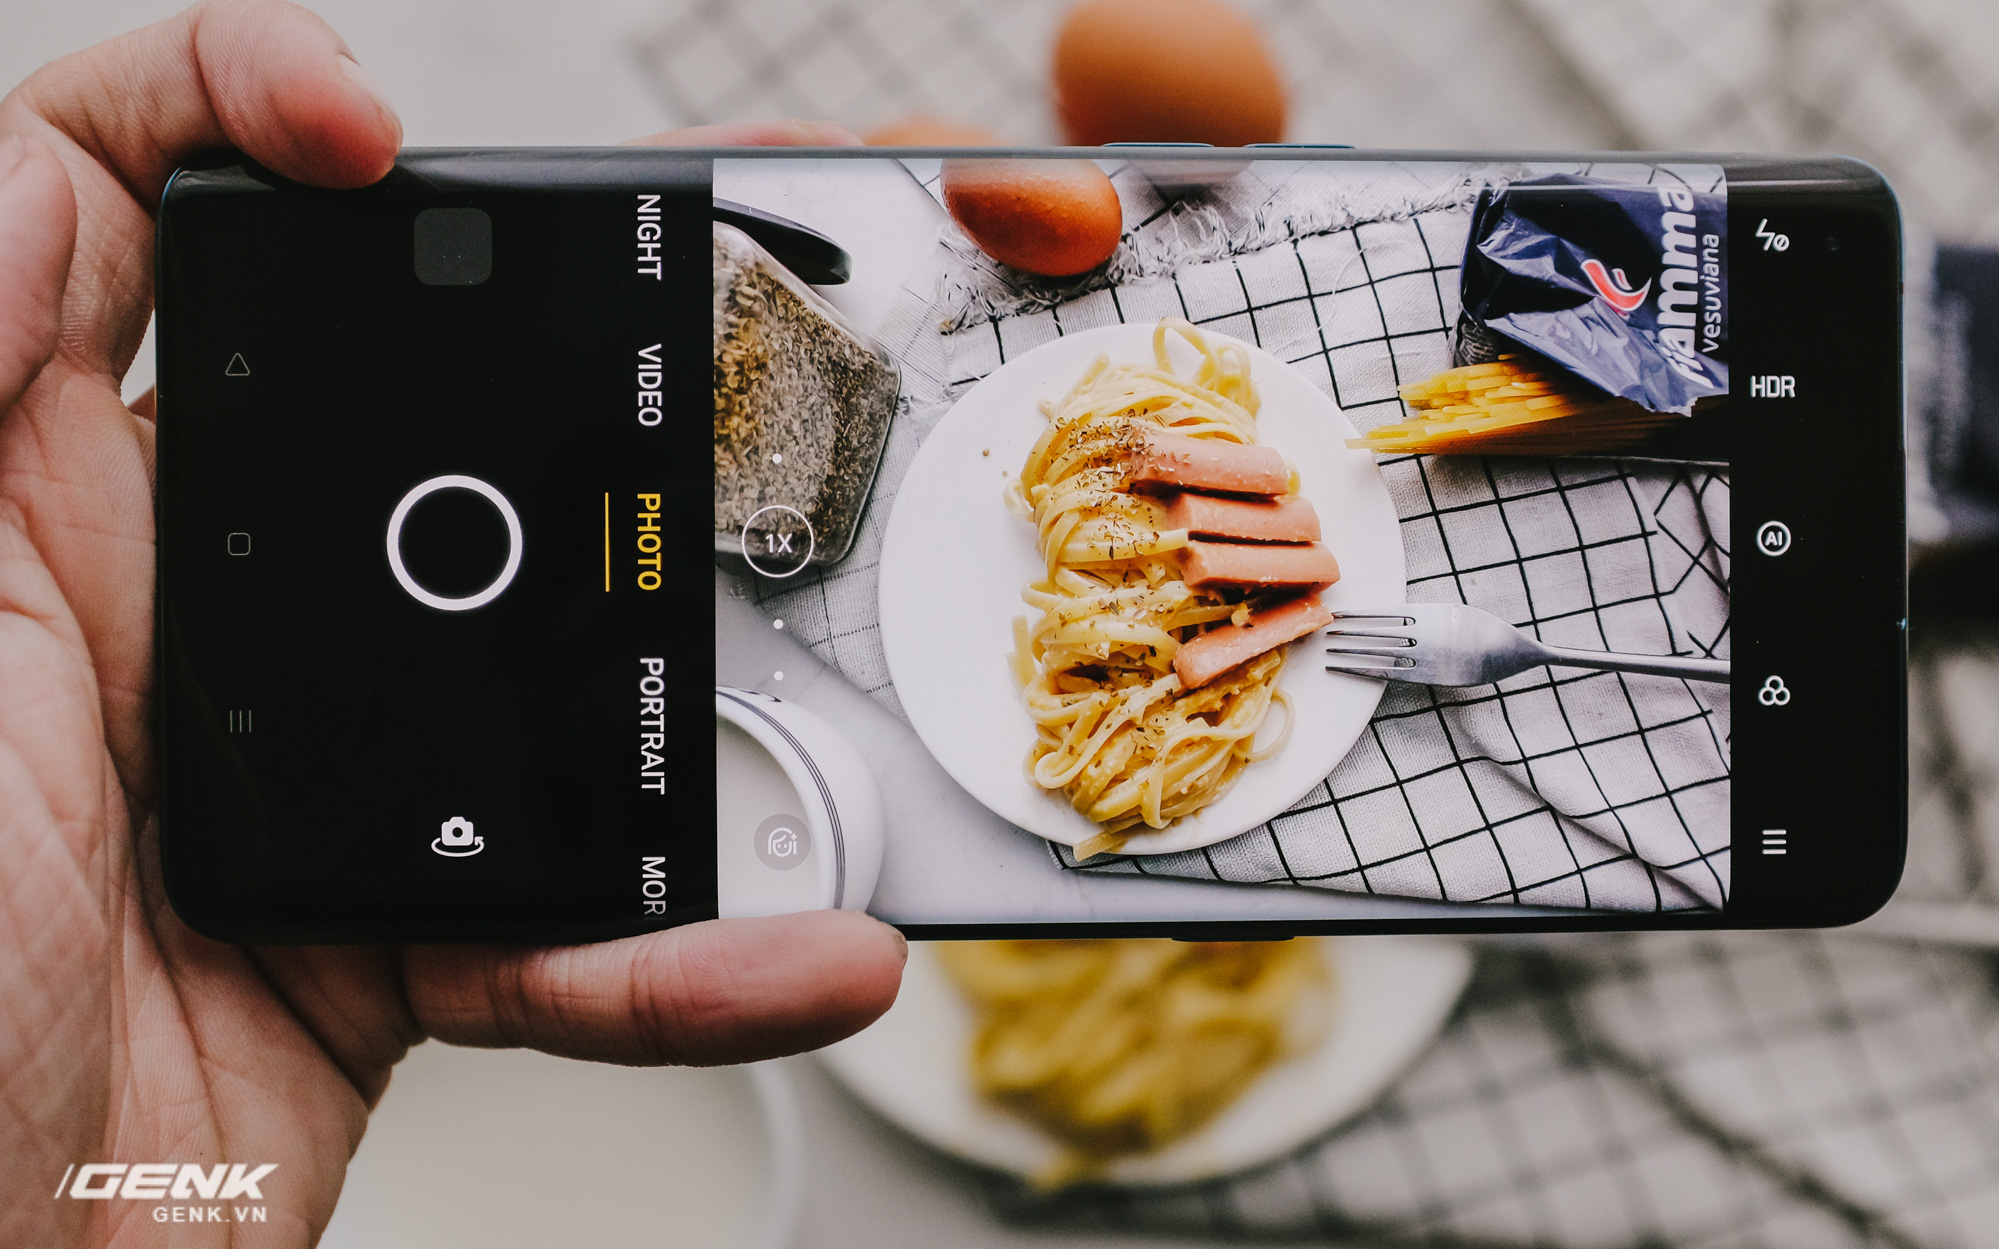 Ở yên trong nhà, đây là cách giúp bạn chụp ảnh đồ ăn đạt 'chuẩn studio' chỉ một chiếc smartphone